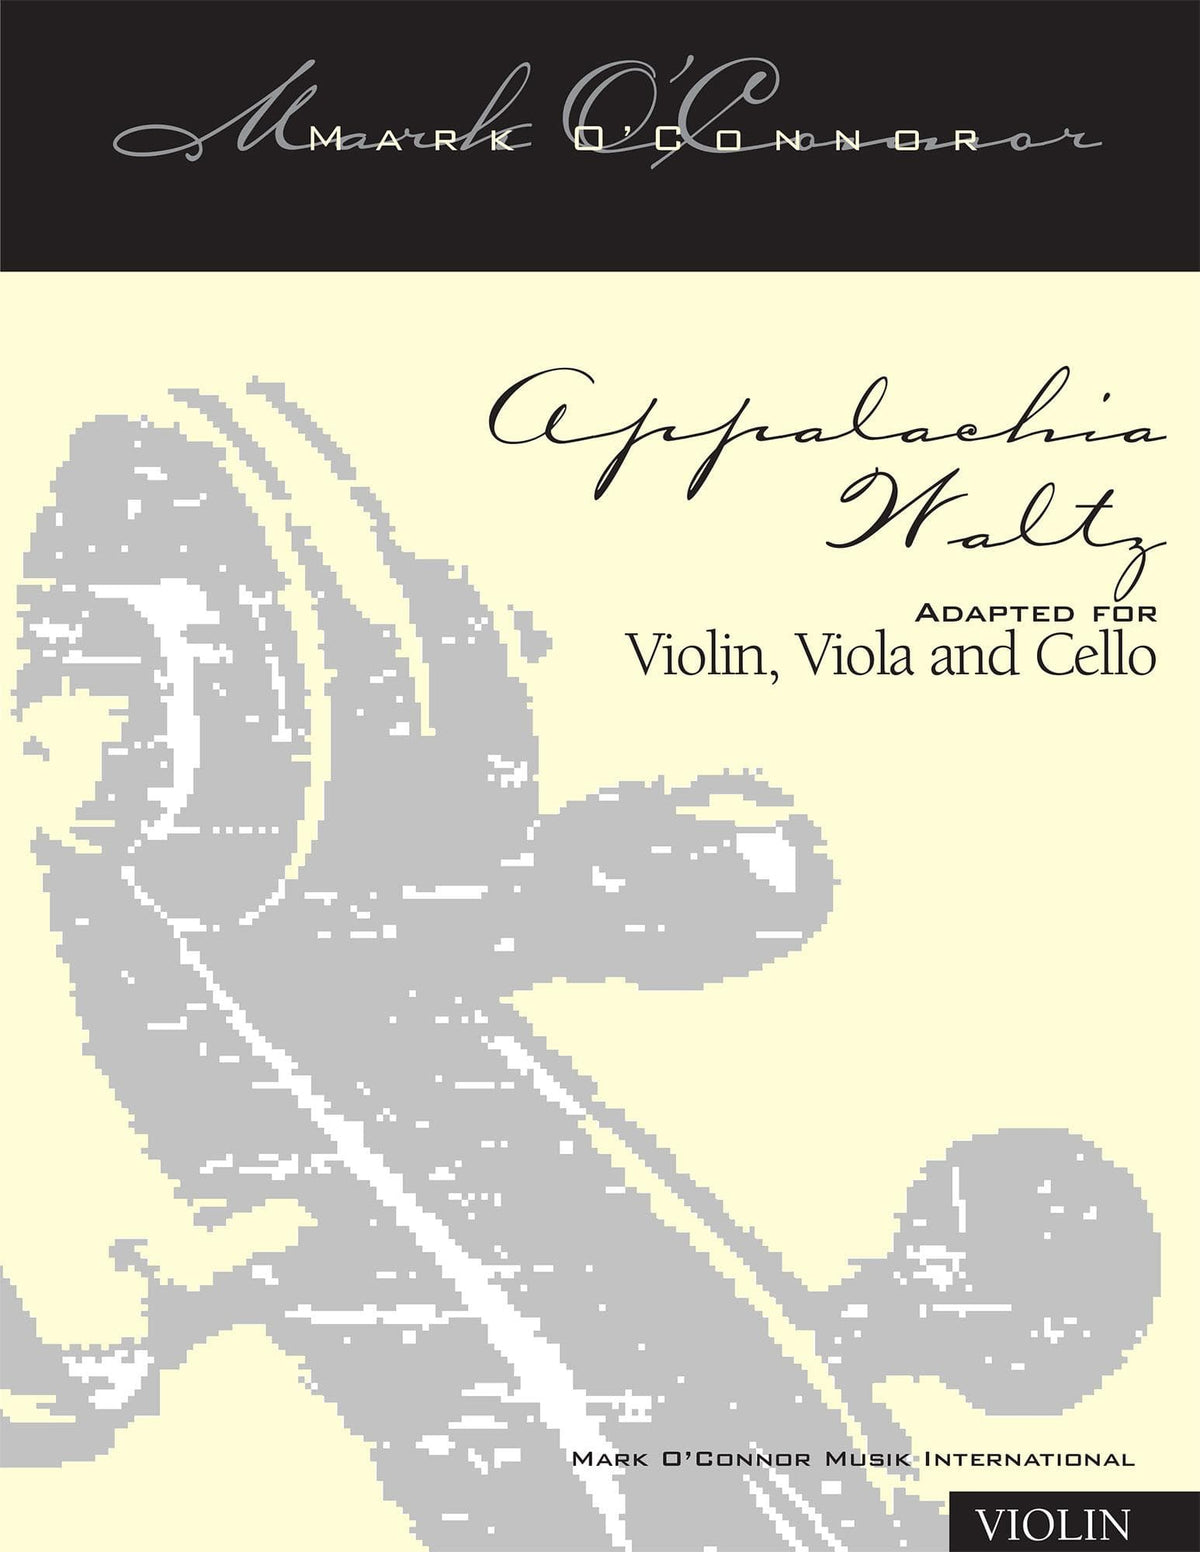 O'Connor, Mark - Appalachia Waltz for Violin, Viola, and Cello - Violin - Digital Download